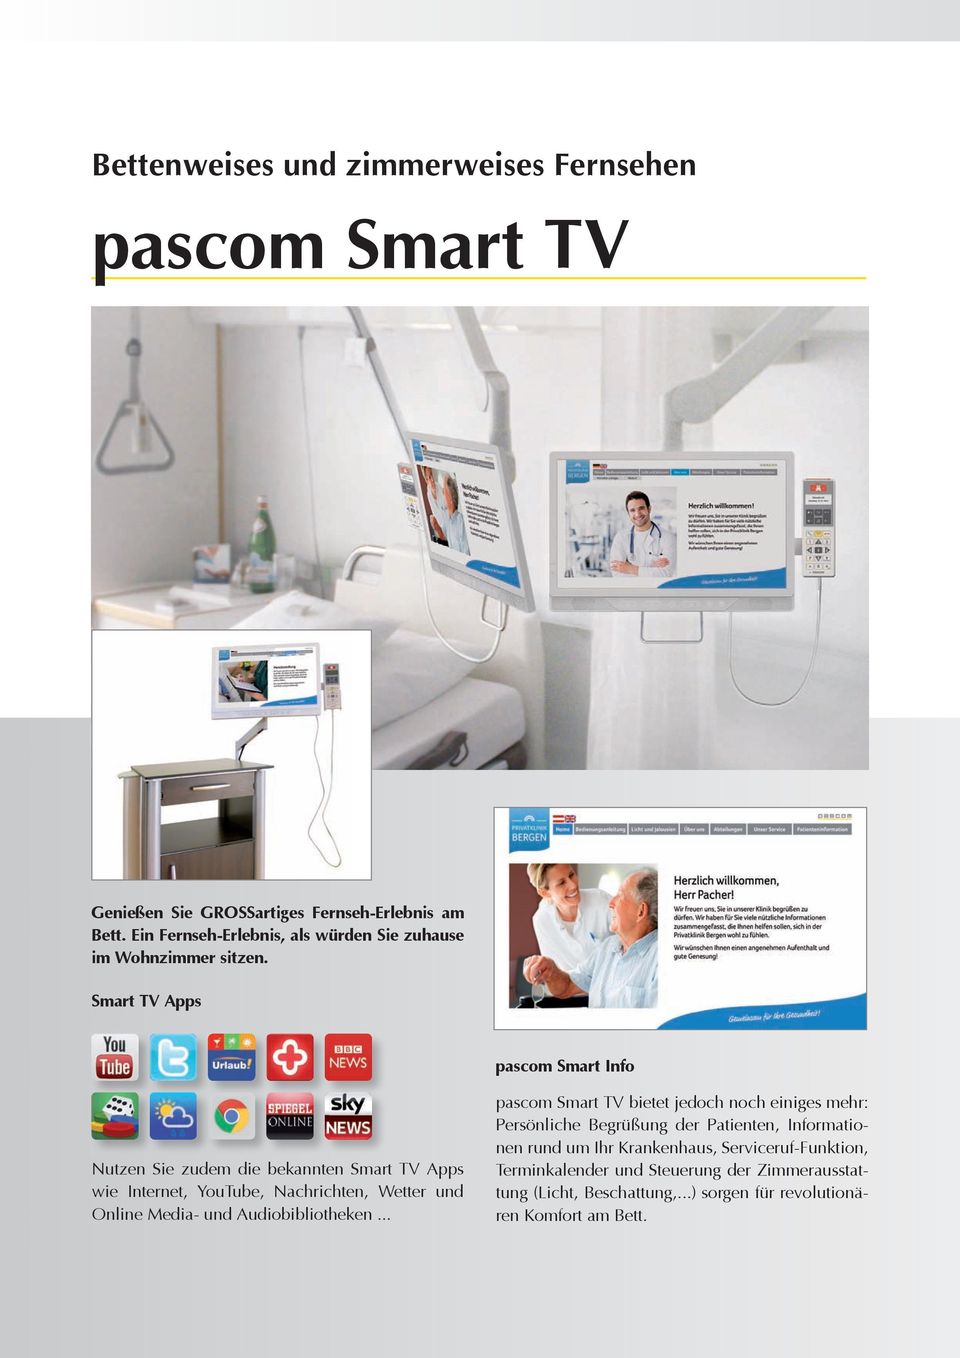 Smart TV Apps pascom Smart Info Nutzen Sie zudem die bekannten Smart TV Apps wie Internet, YouTube, Nachrichten, Wetter und Online Media- und